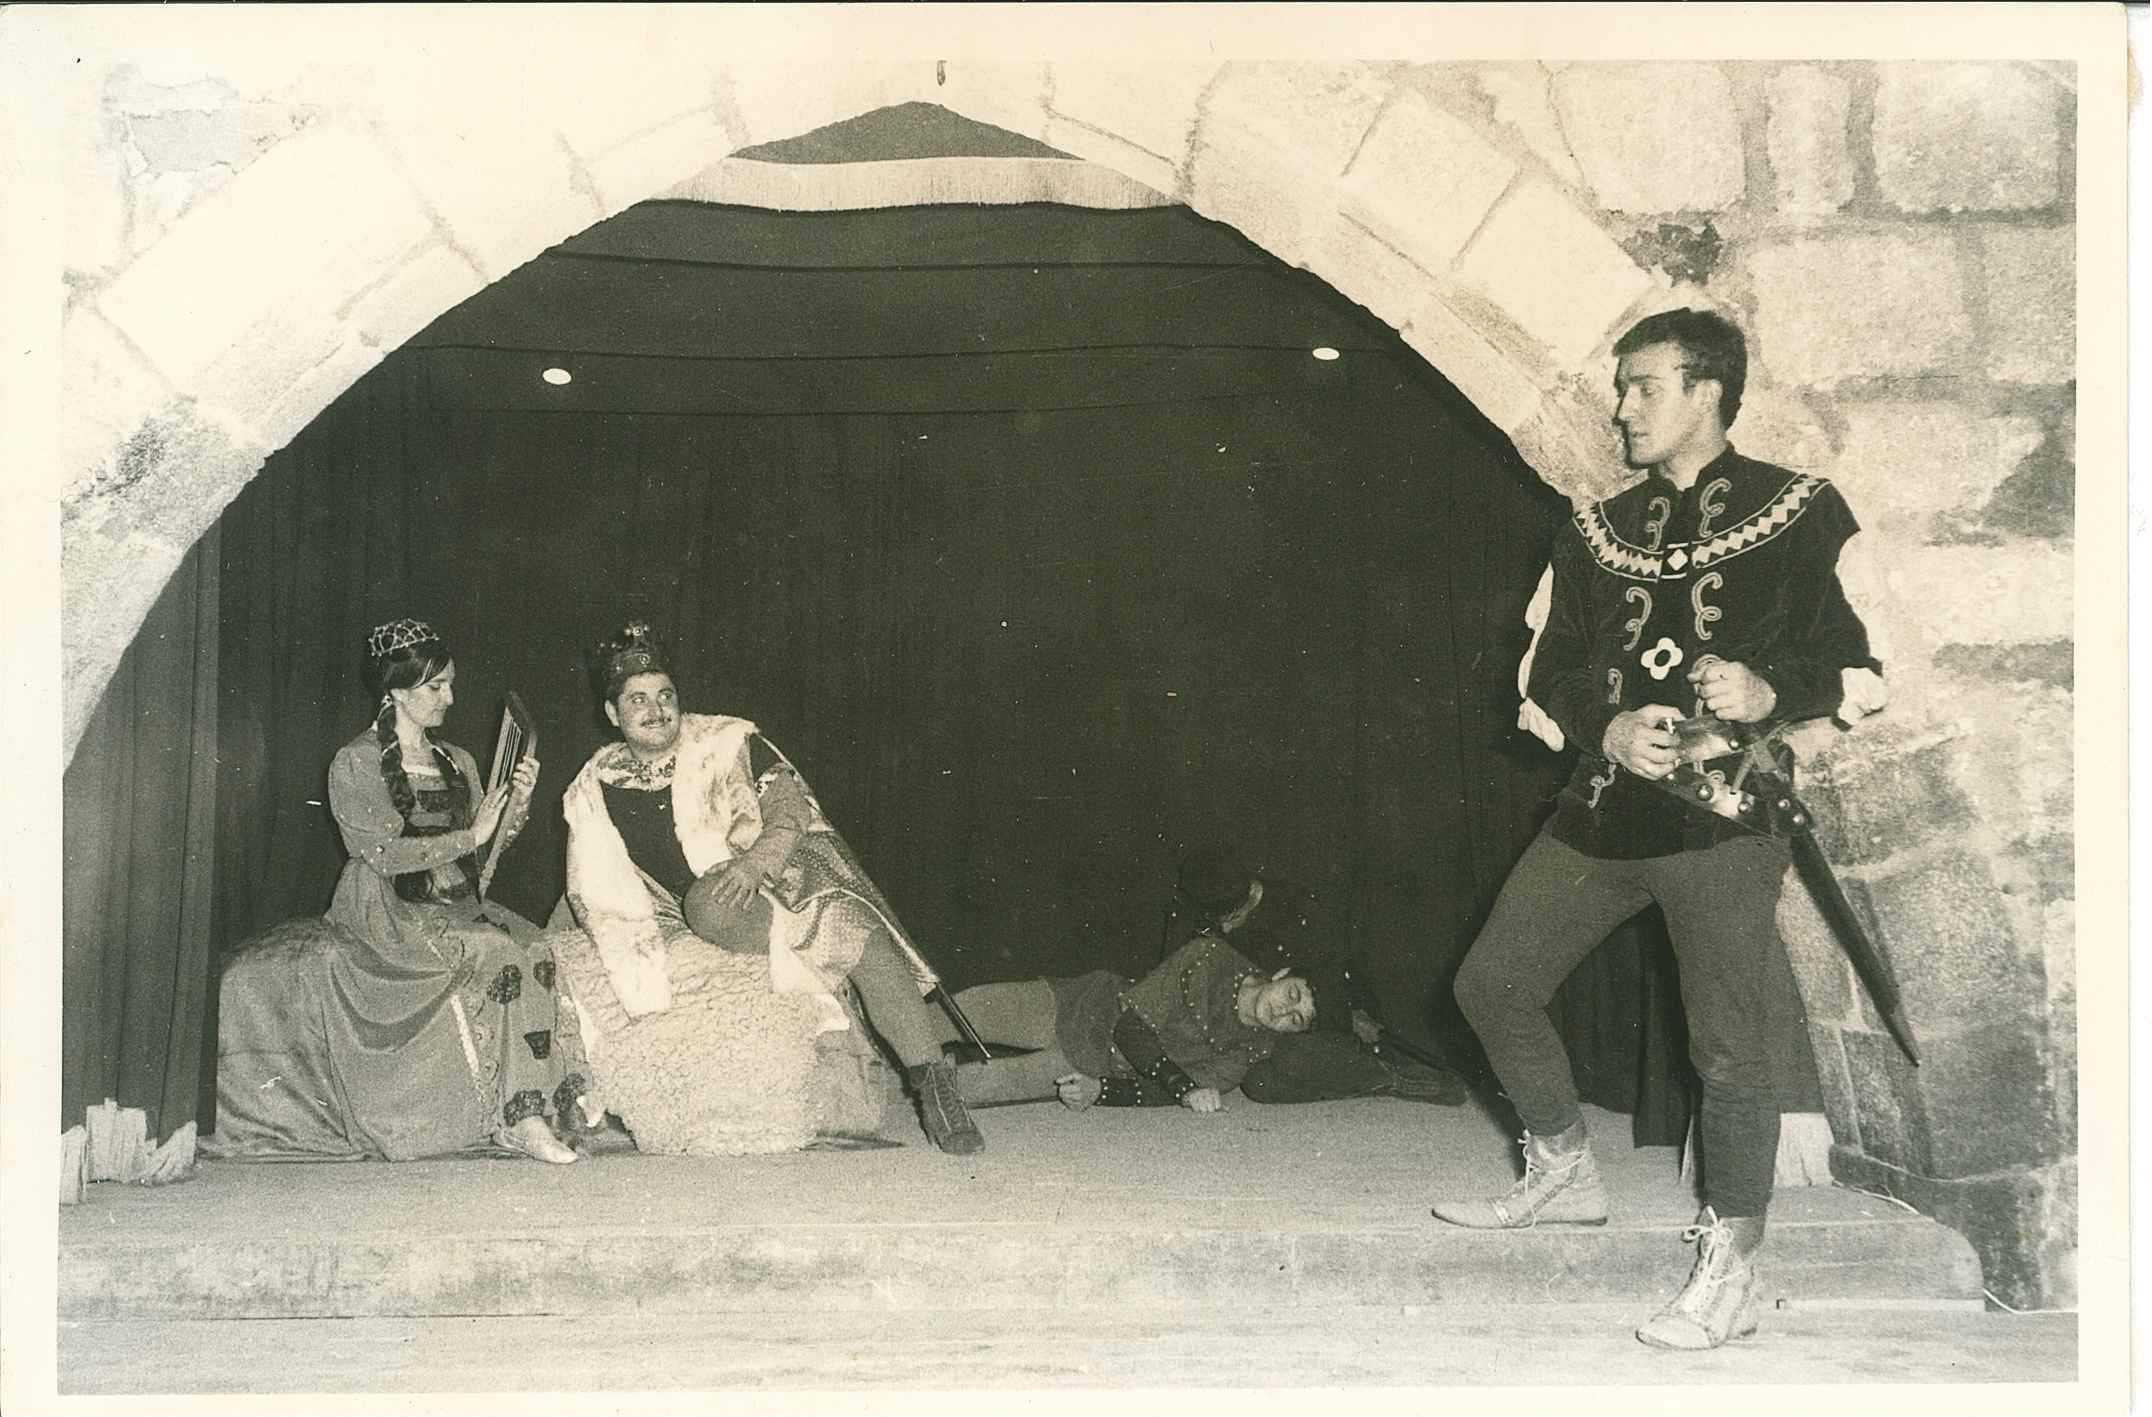 BECKET O L’HONOR DE DÉU, 1966  Montserrat Capellera, Joan Llamas, Josep Cleris i Manel Moreno